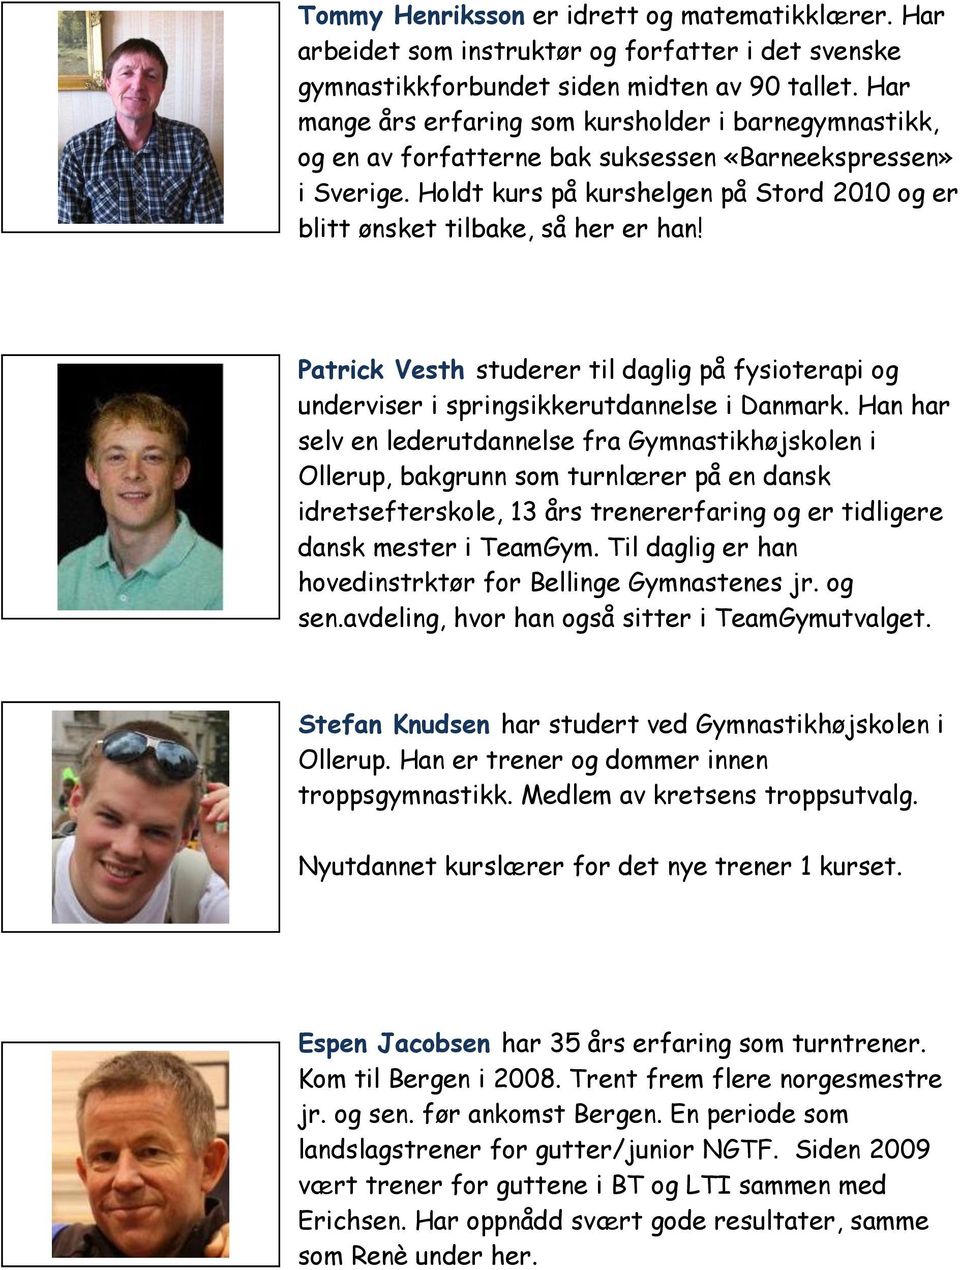 Holdt kurs på kurshelgen på Stord 2010 og er blitt ønsket tilbake, så her er han! Patrick Vesth studerer til daglig på fysioterapi og underviser i springsikkerutdannelse i Danmark.